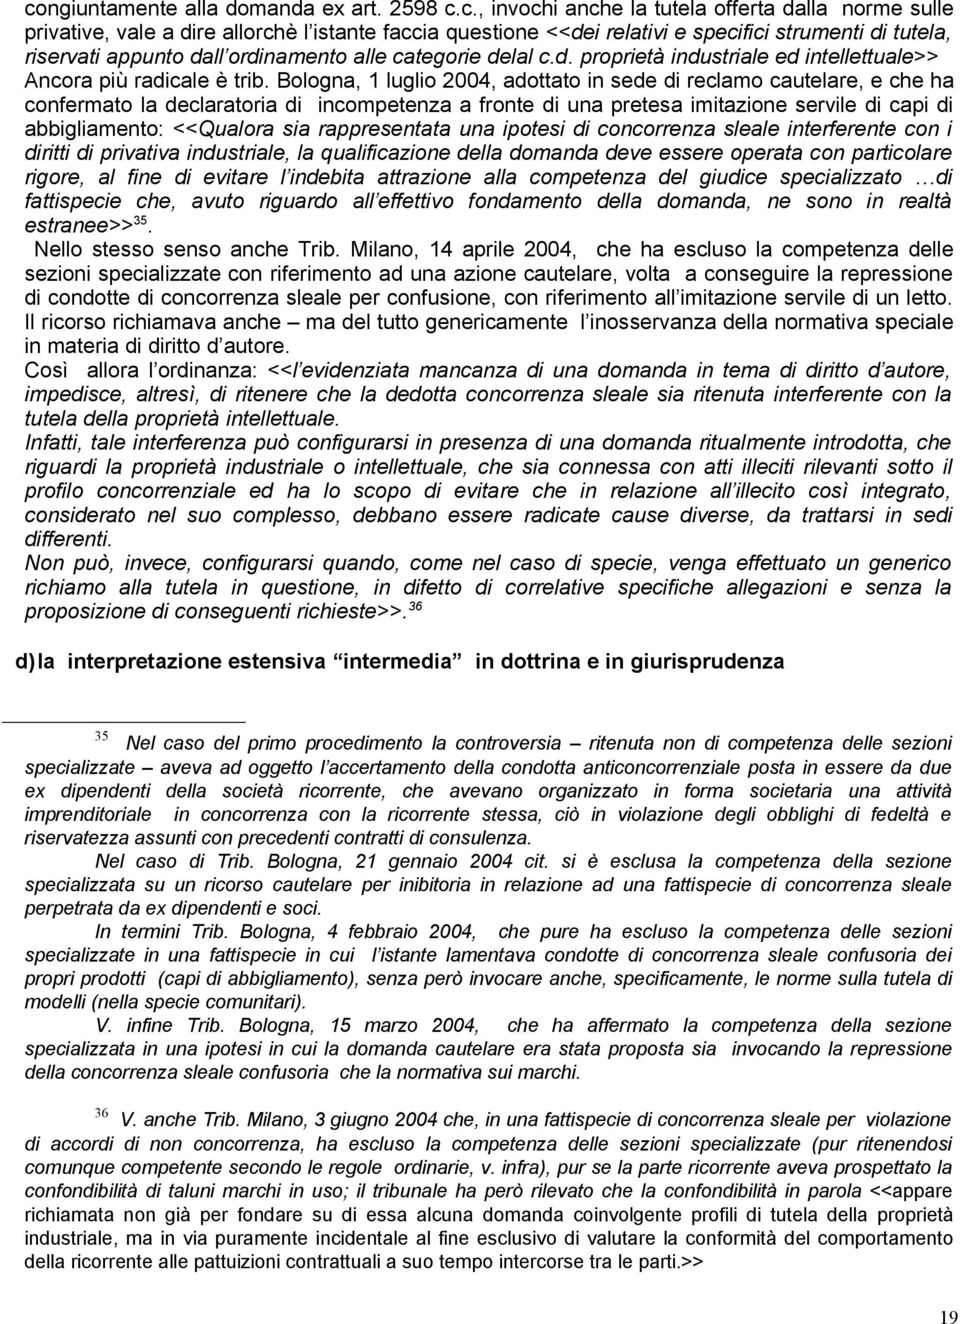 Bologna, 1 luglio 2004, adottato in sede di reclamo cautelare, e che ha confermato la declaratoria di incompetenza a fronte di una pretesa imitazione servile di capi di abbigliamento: <<Qualora sia